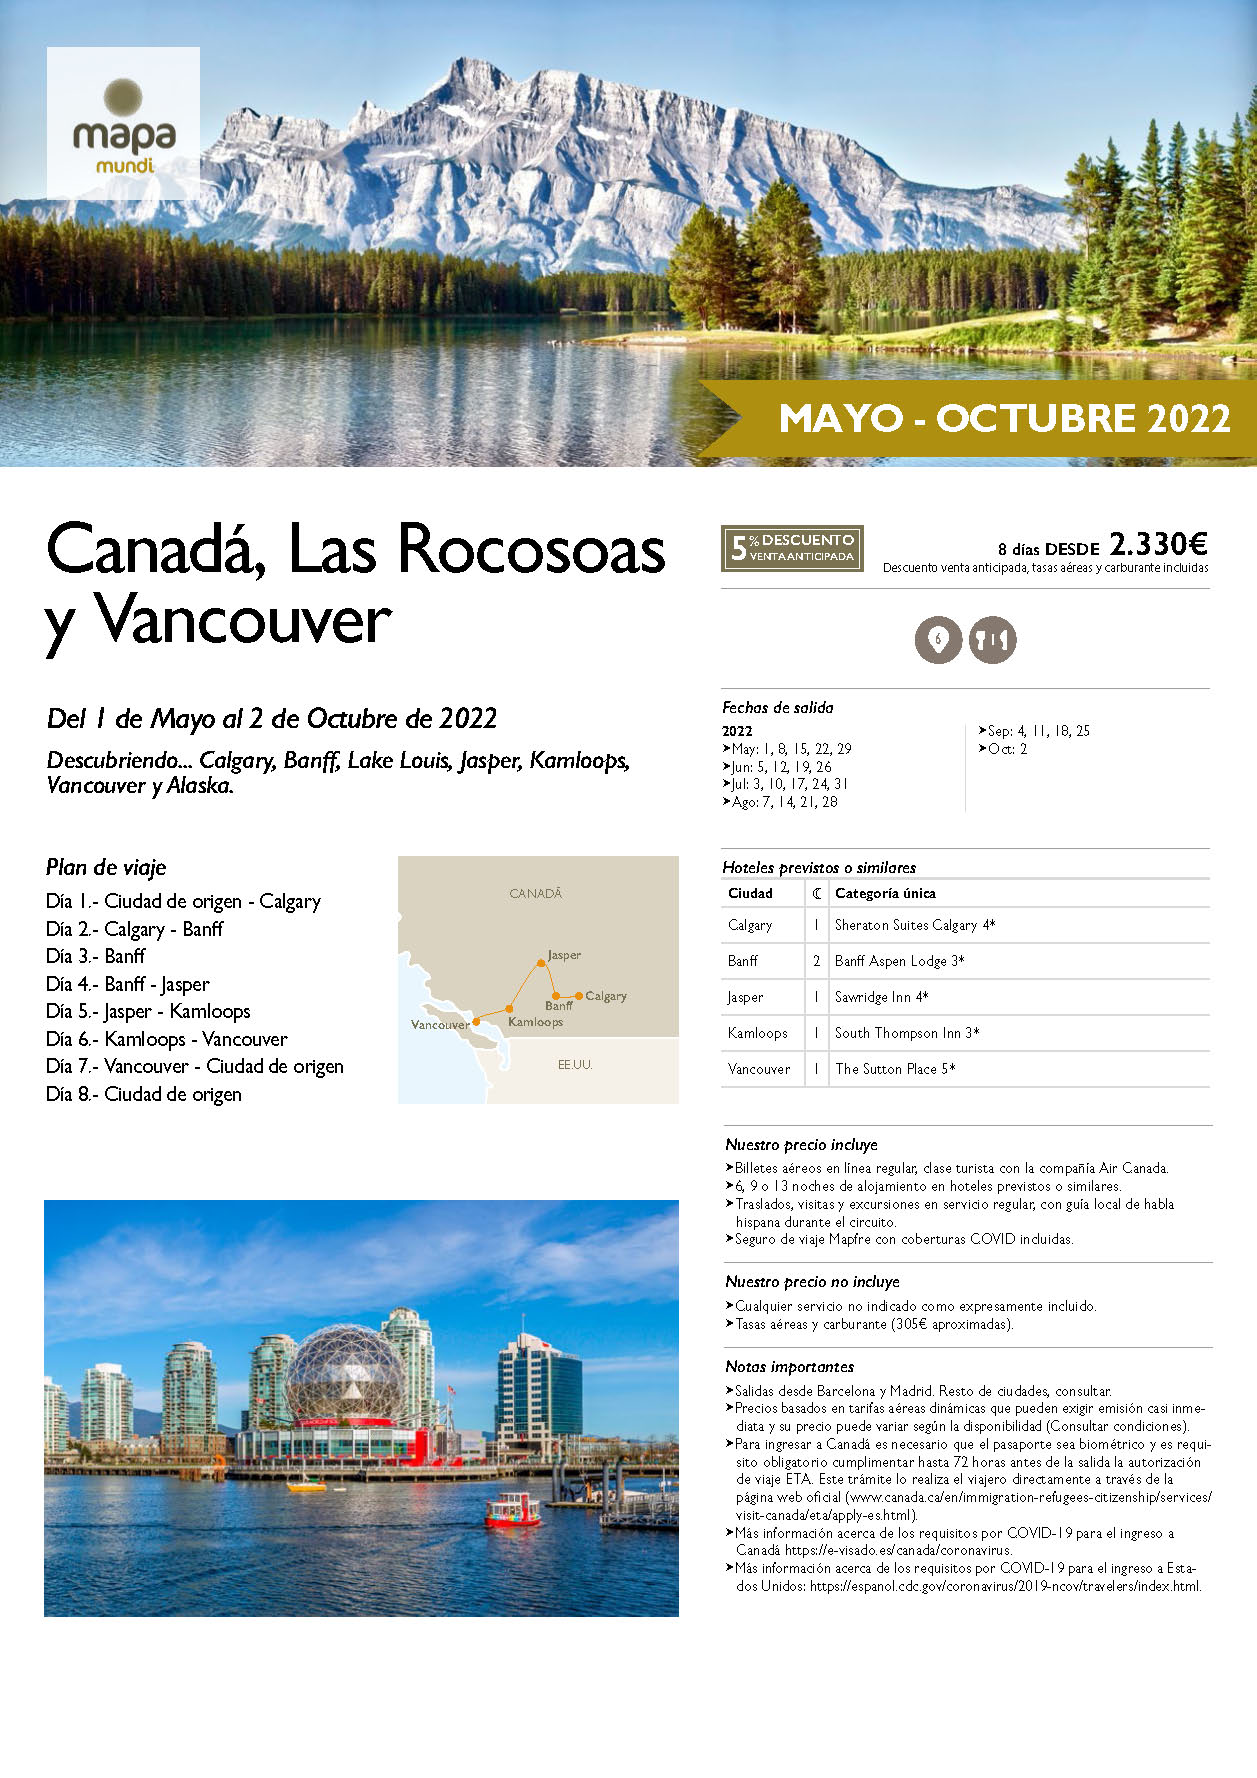 Oferta Mapa Mundi Circuito Canada Las Rocosas y Vancouver 8 dias salidas Mayo a Octubre 2022 desde Madrid y Barcelona vuelos Air Canada